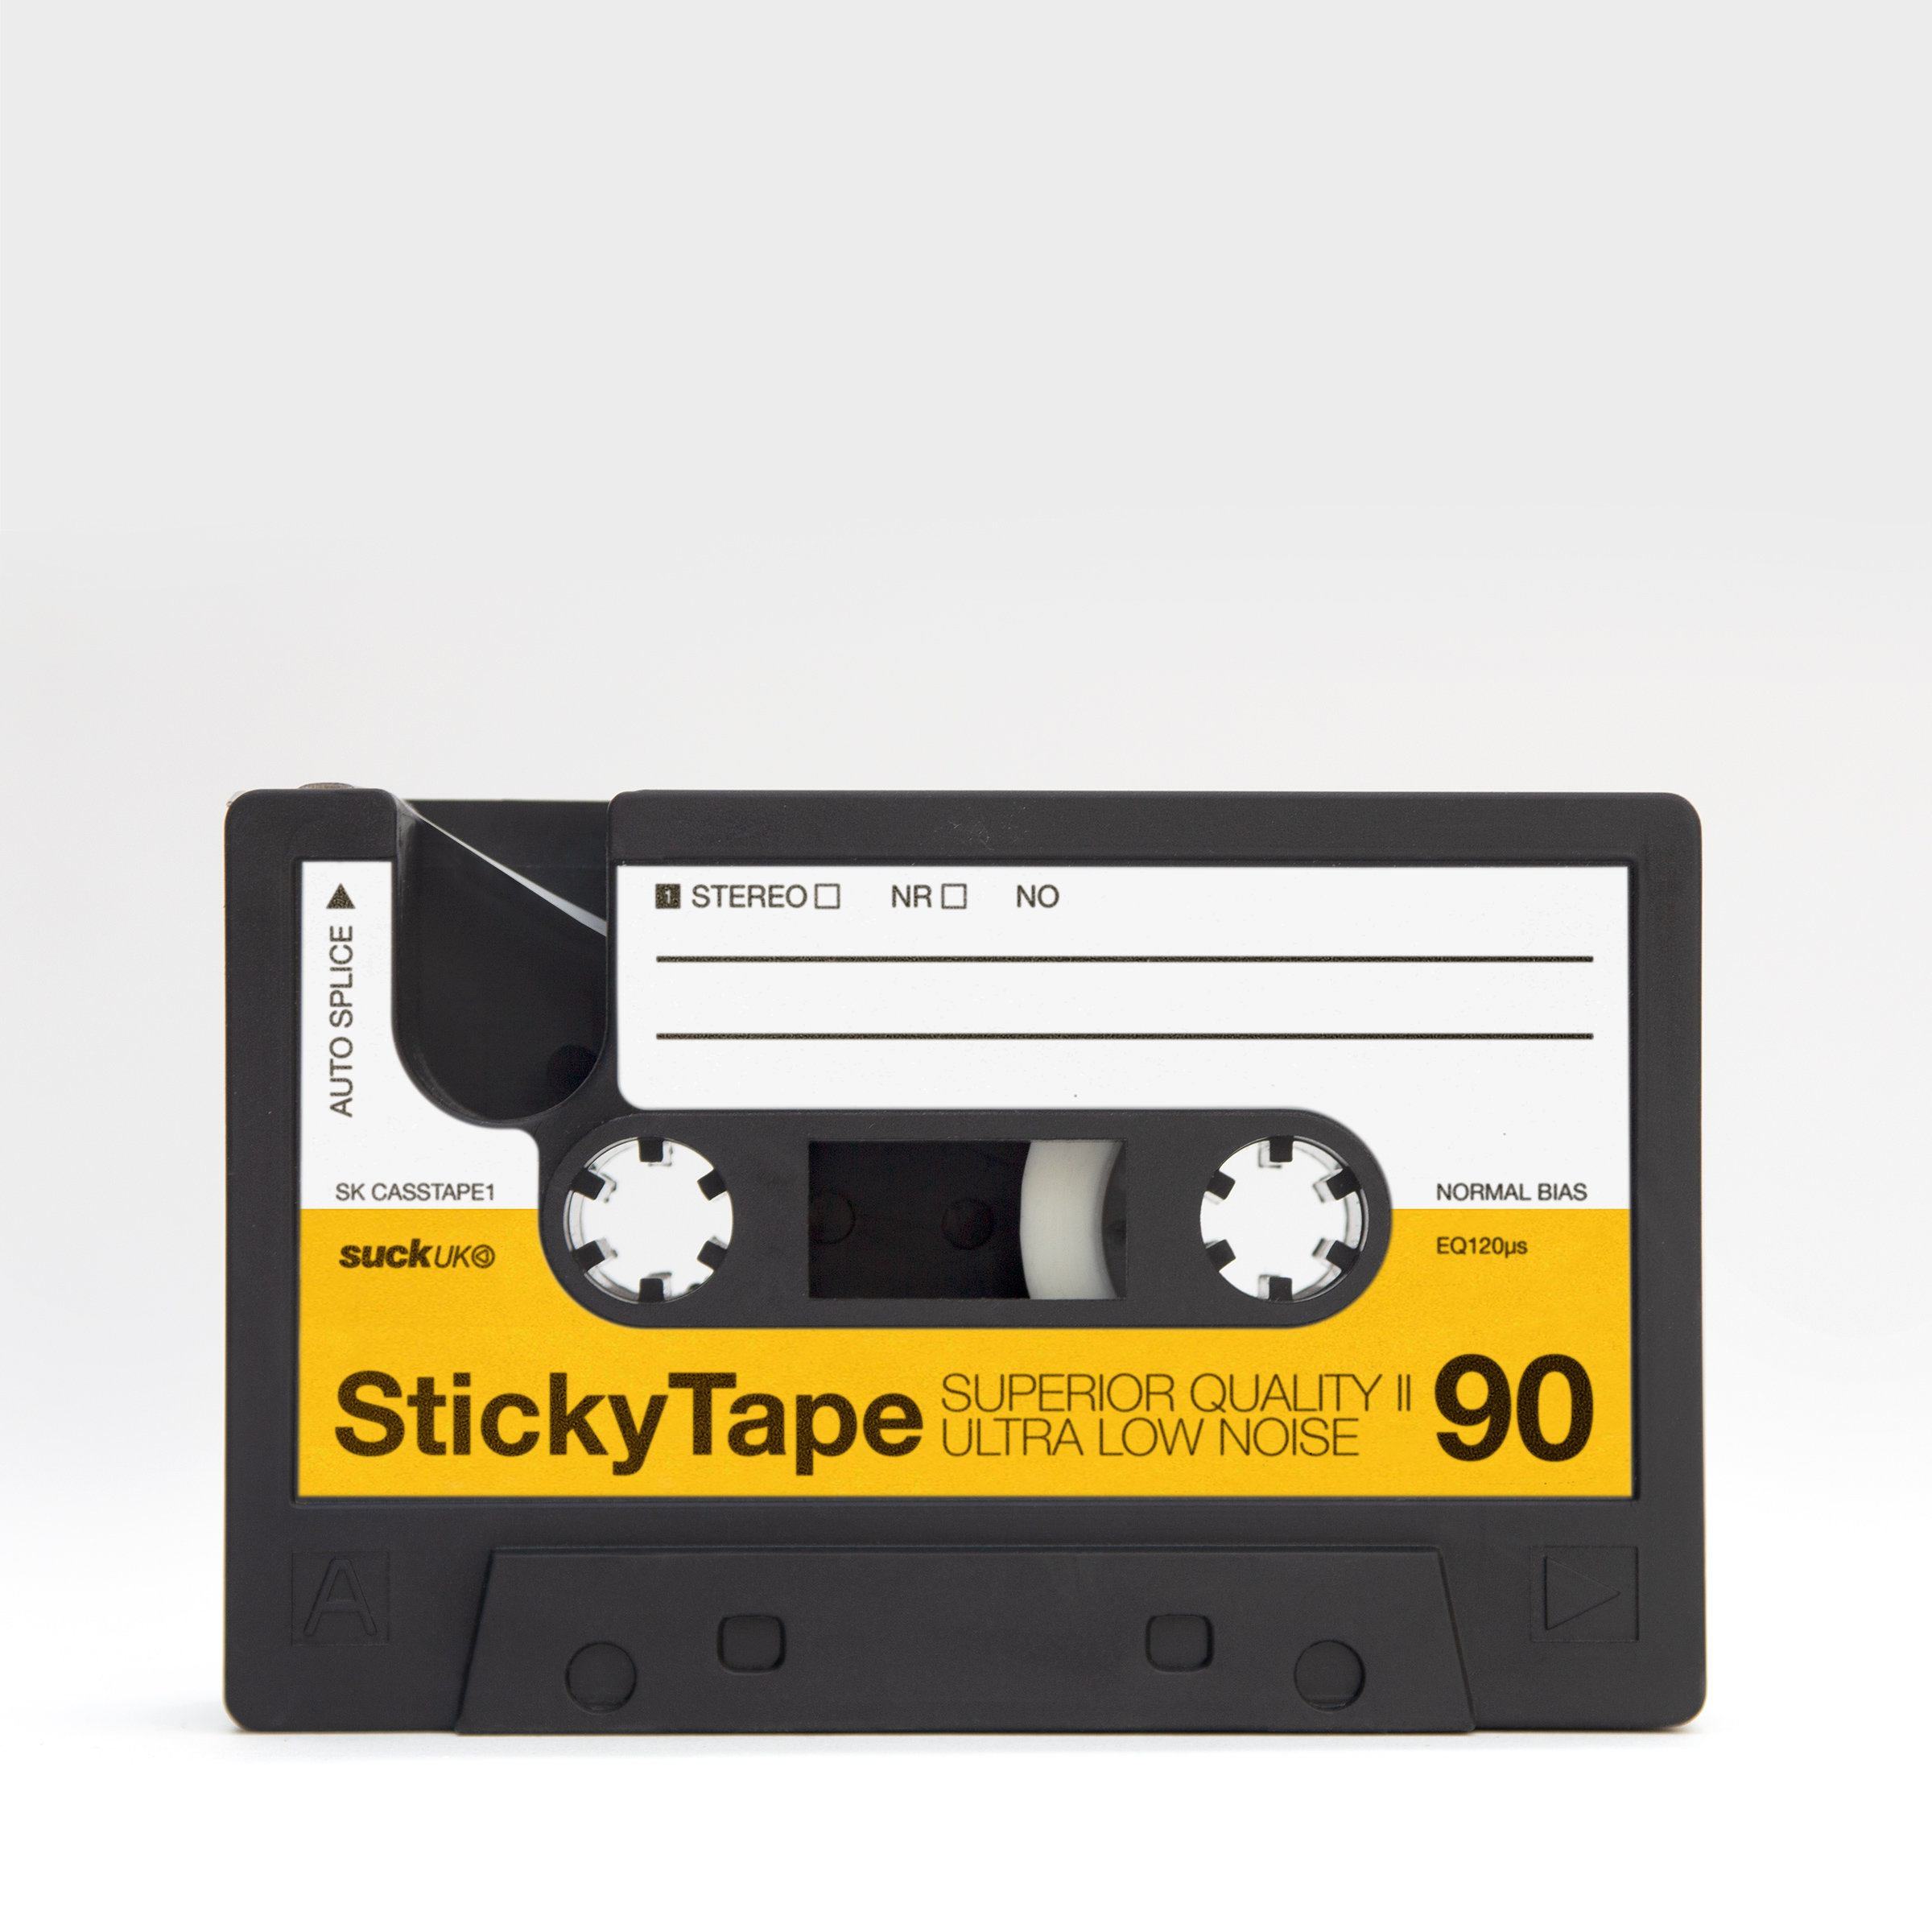 Stick-Tape-Dispenser Cassette.